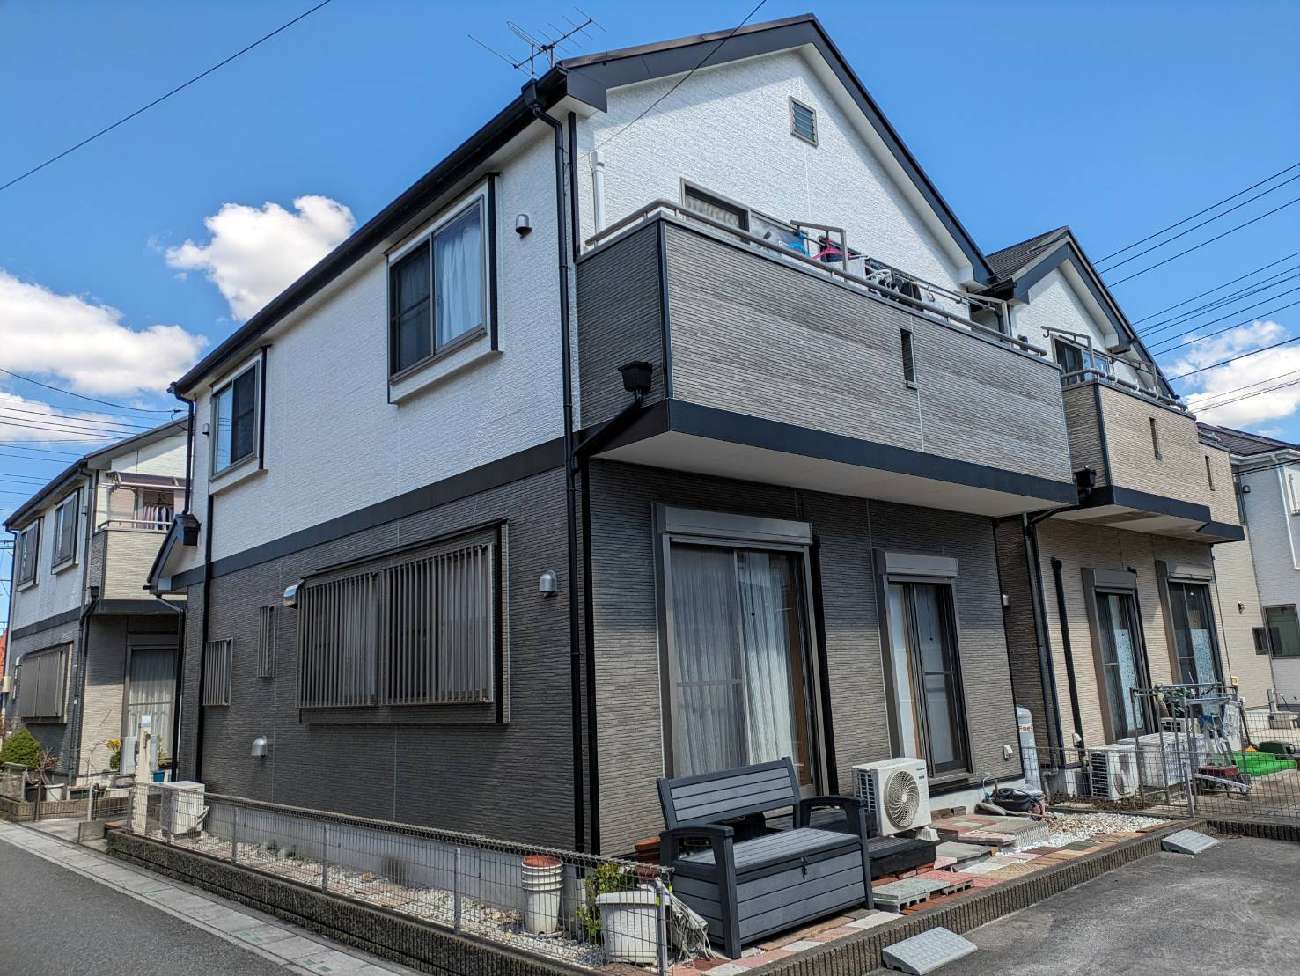 【埼玉県三郷市】Y様邸雪被害による雨樋破損、交換工事と屋根点検を行いました。 画像